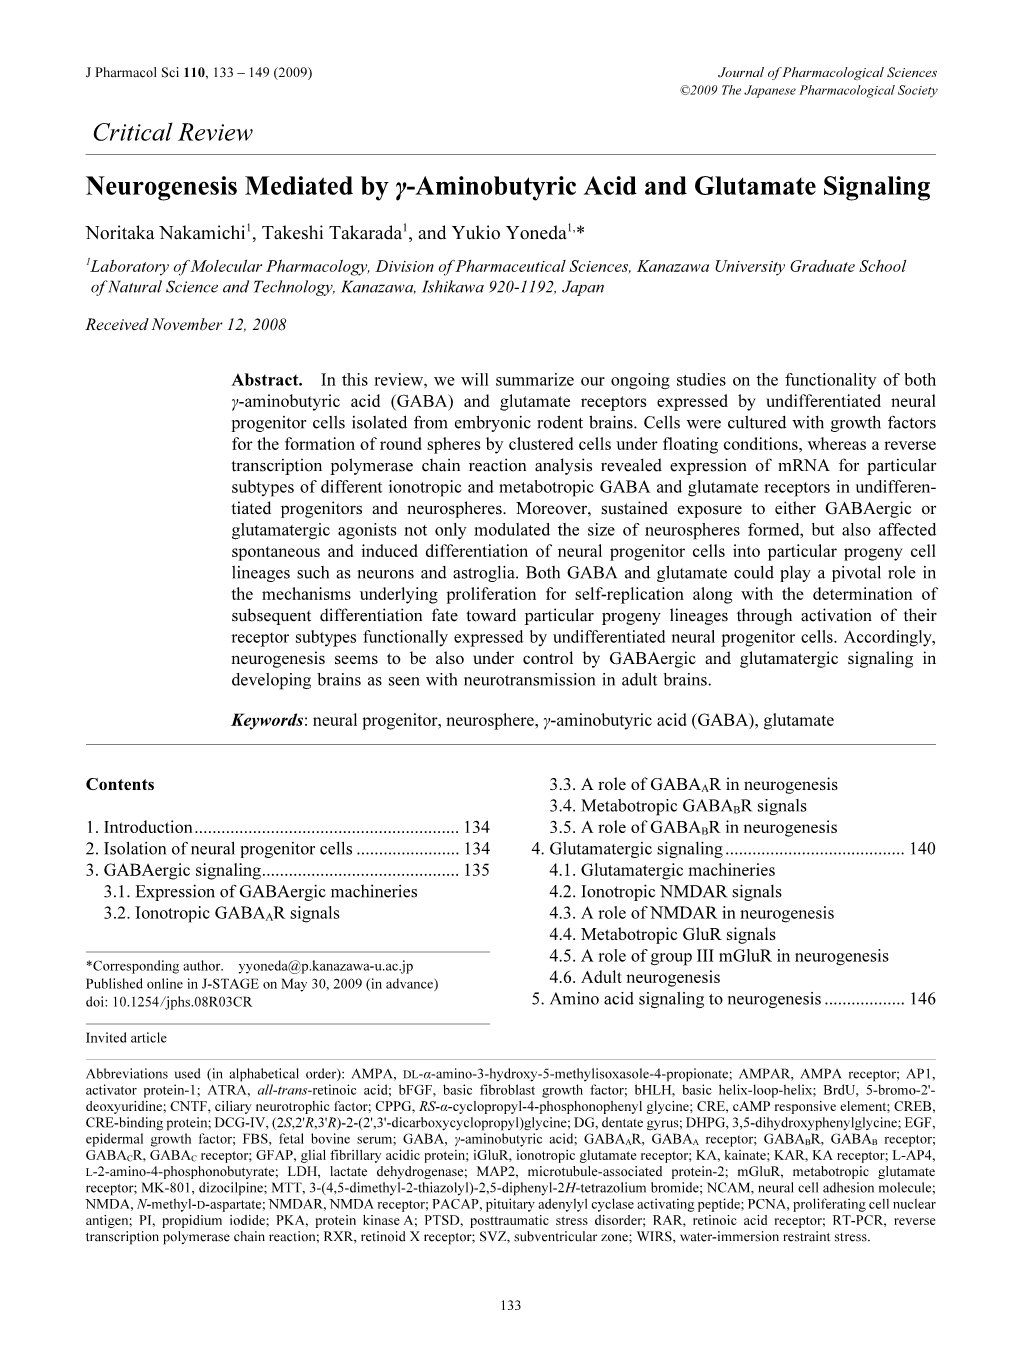 Neurogenesis Mediated by Γ-Aminobutyric Acid and Glutamate Signaling Noritaka Nakamichi1, Takeshi Takarada1, and Yukio Yoneda1,*